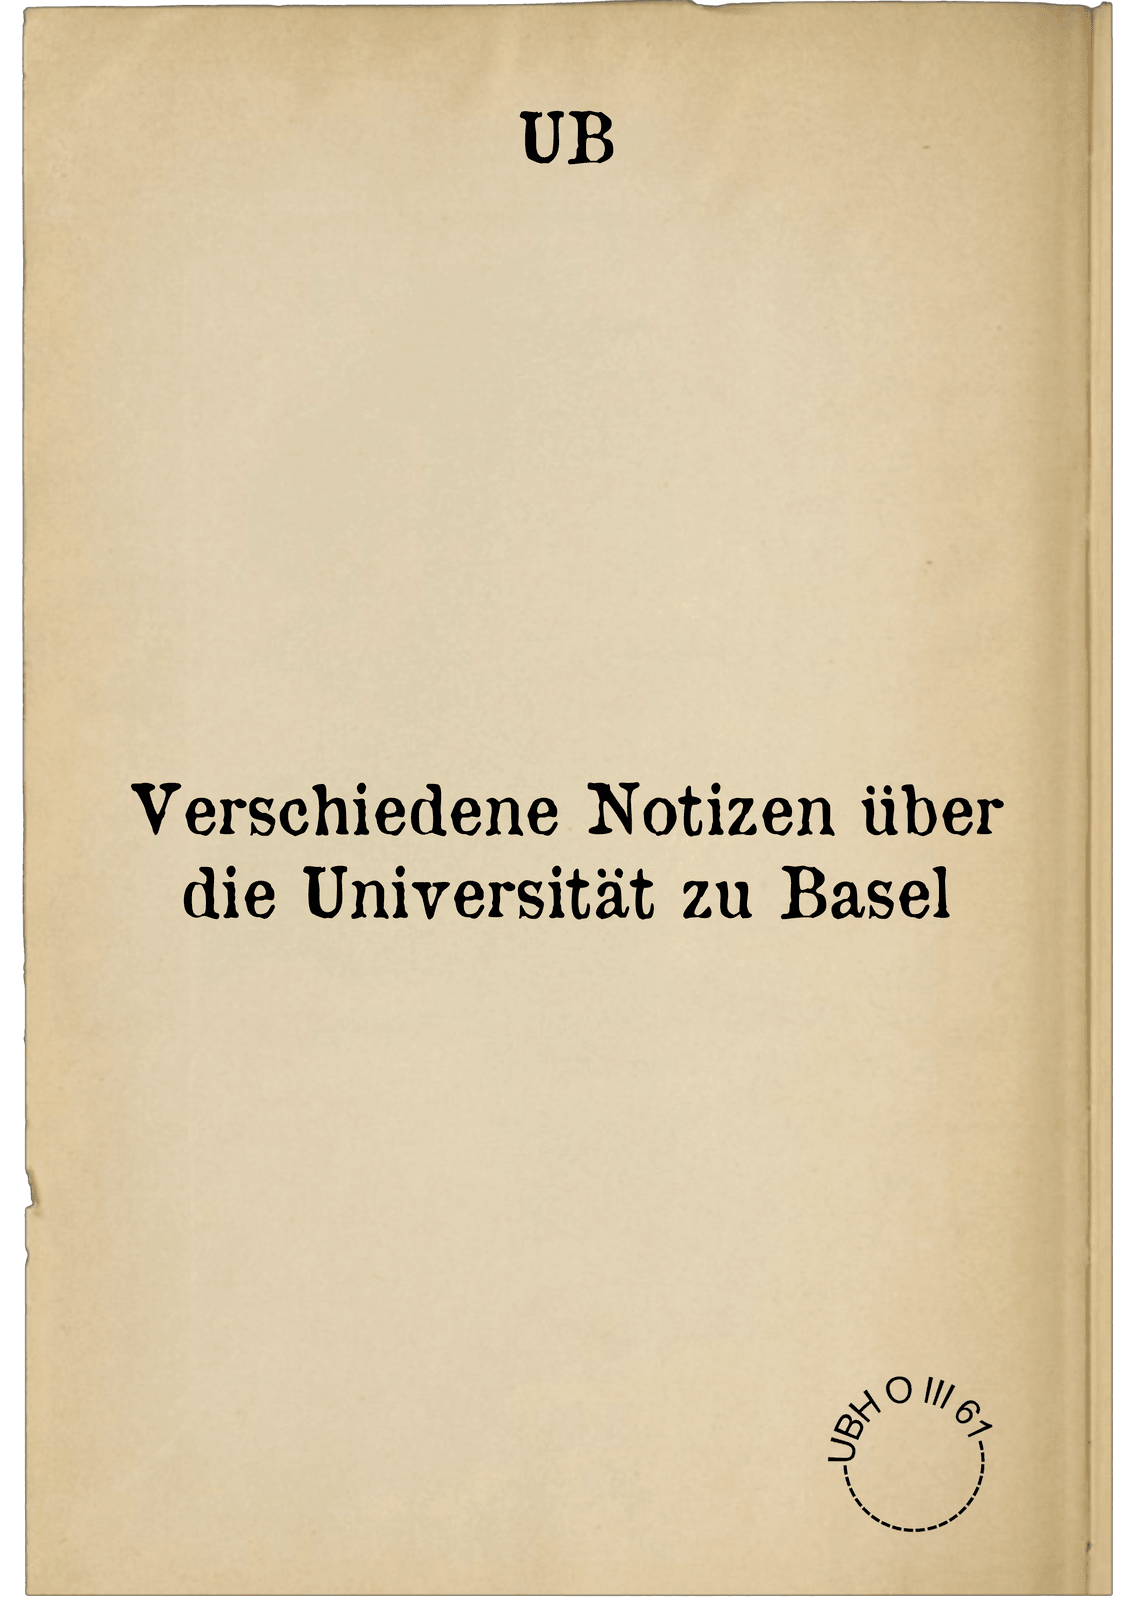 Verschiedene Notizen über die Universität zu Basel